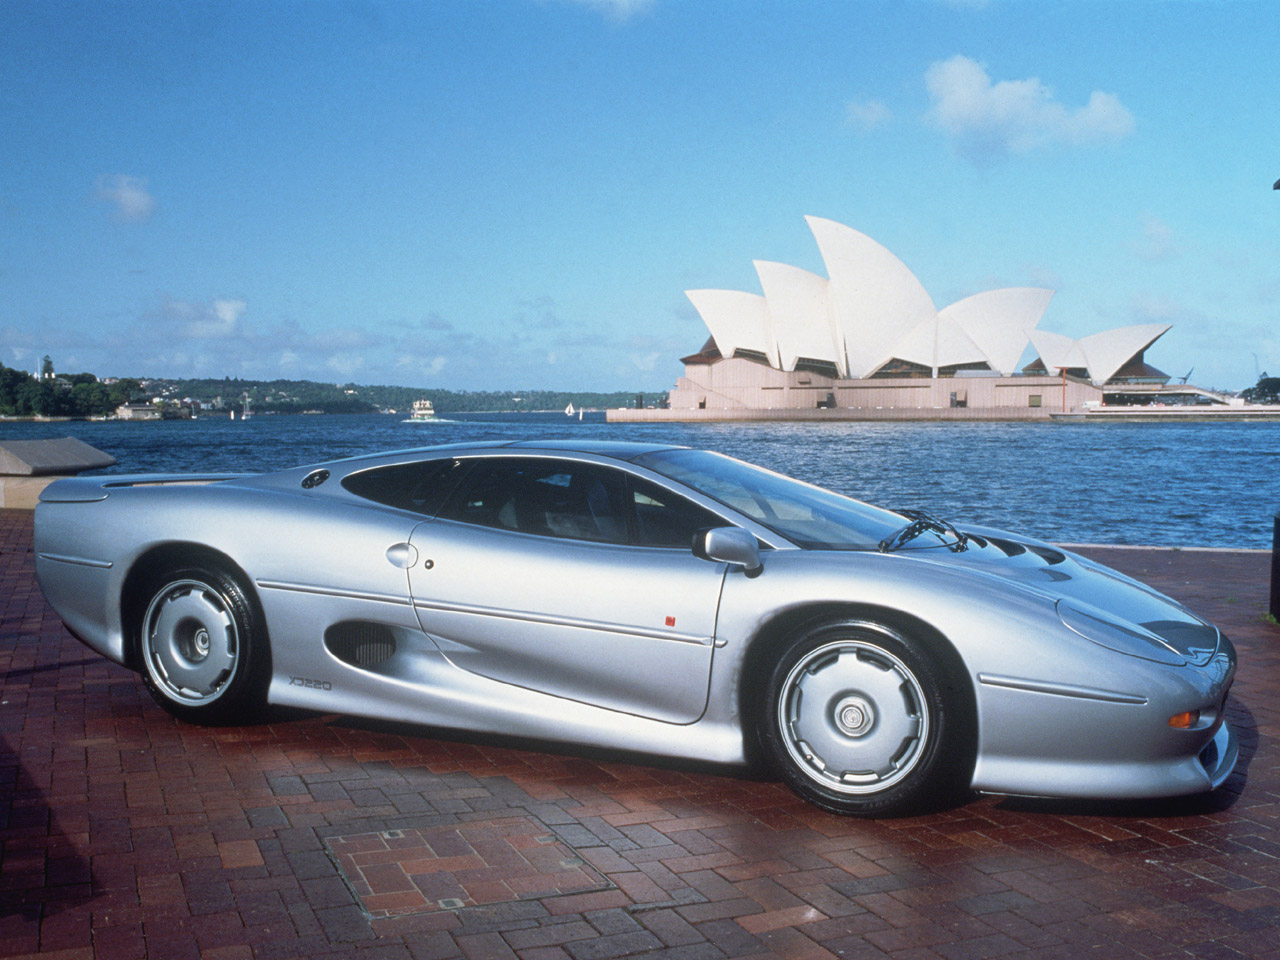 9º. Ferrari Enzo: 349 km/h   A Enzo peca na velocidade, mas o design continua sendo um dos mais bonitos da lista